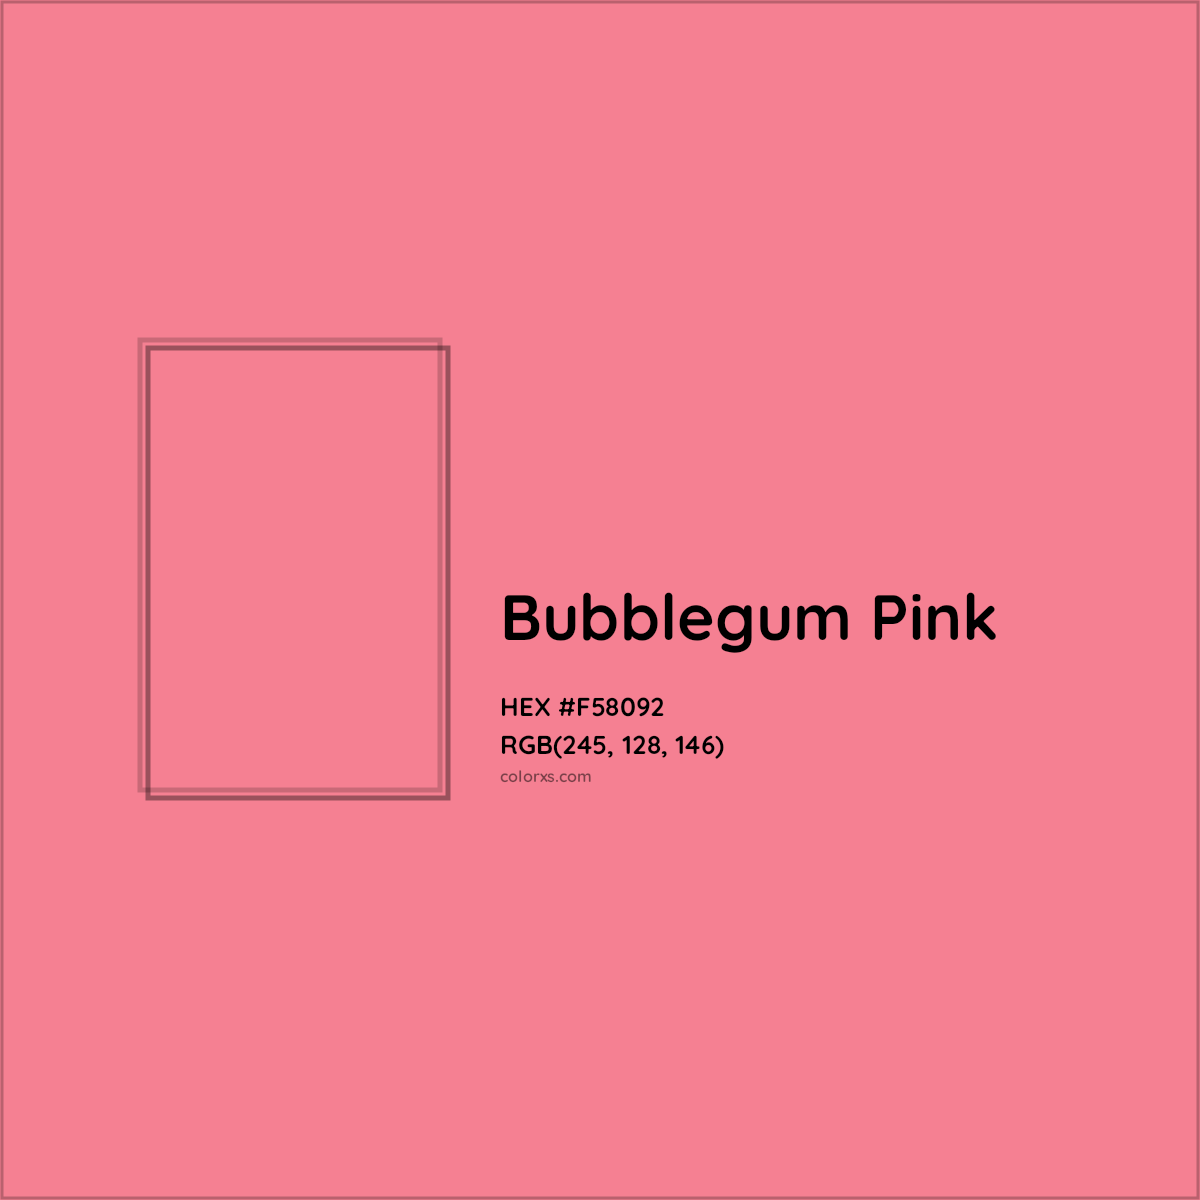 10. "Bubblegum Pink" - wide 11